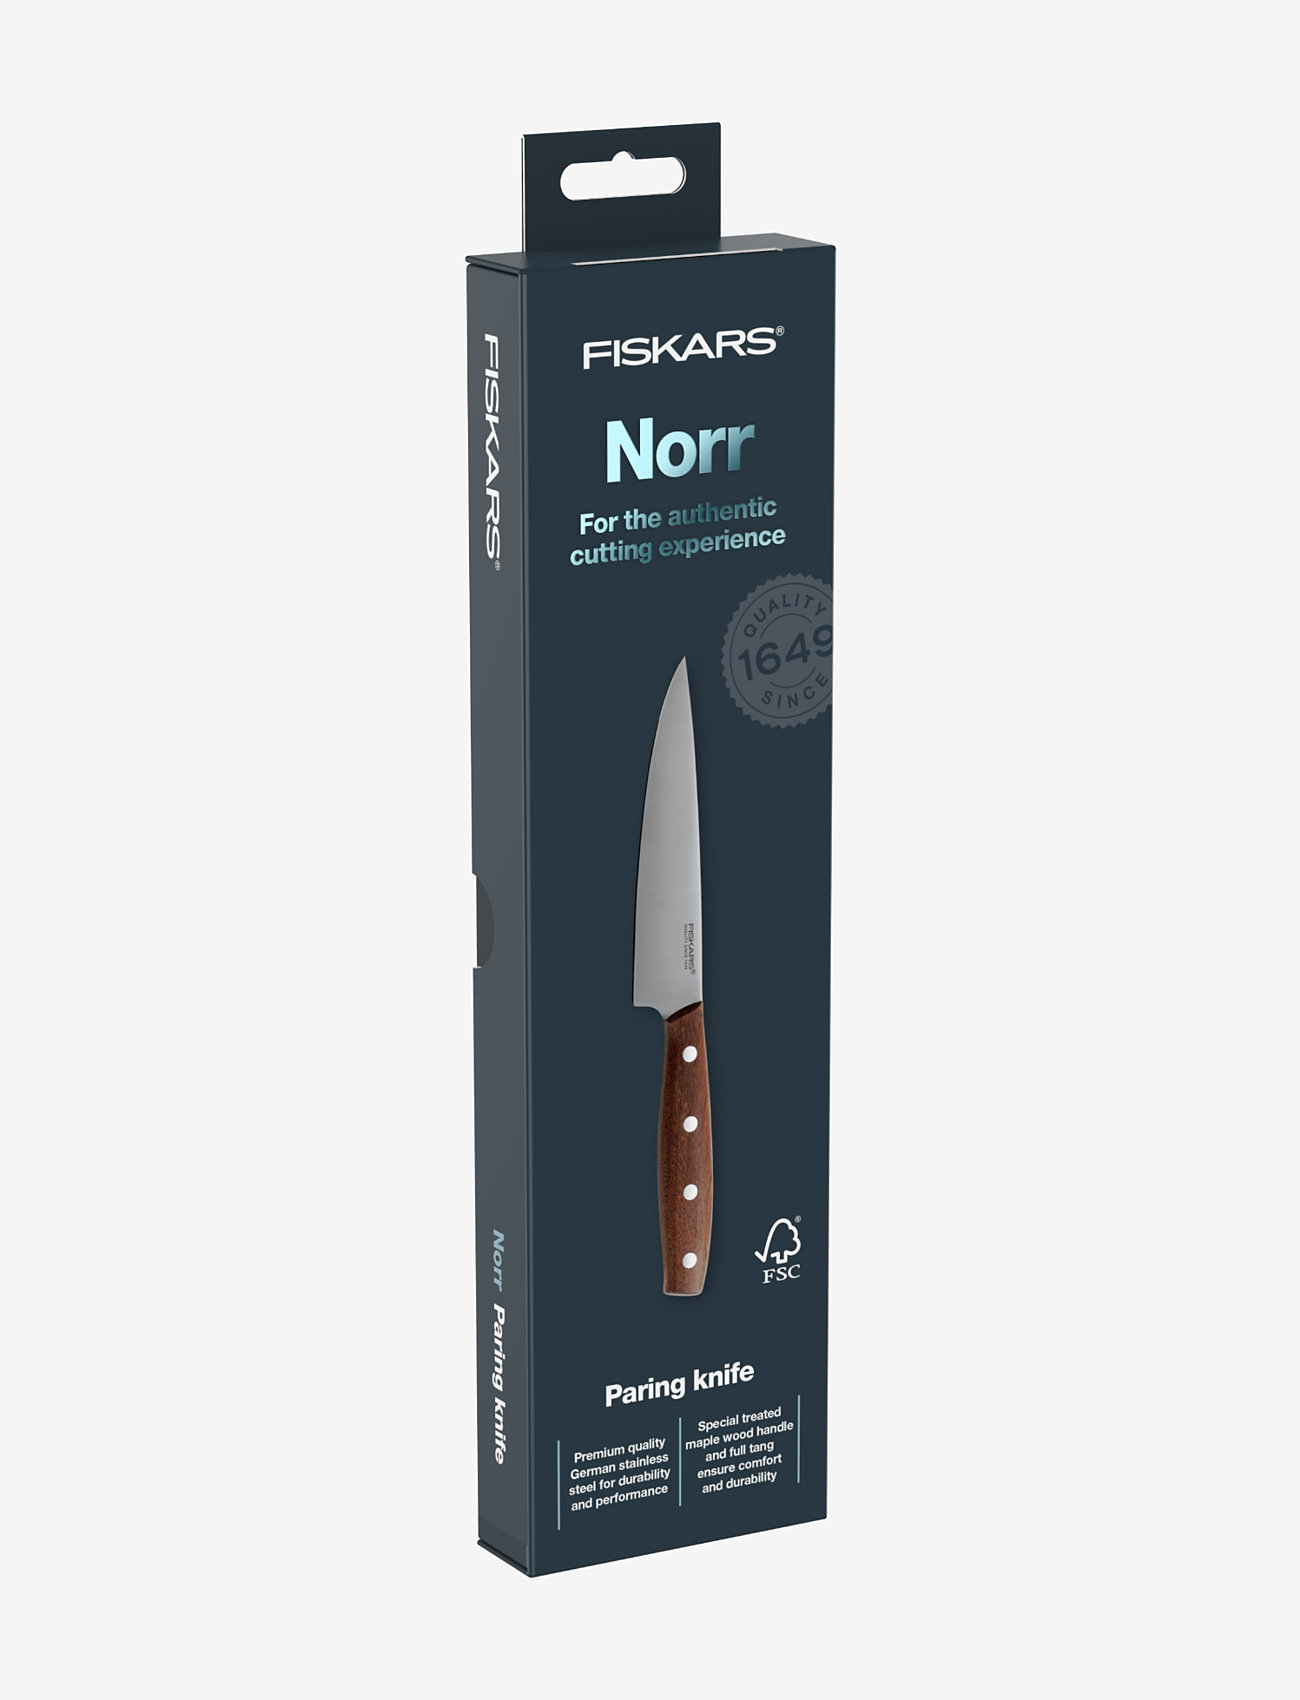 Fiskars - North vegetable knife 12 cm - die niedrigsten preise - brown - 1